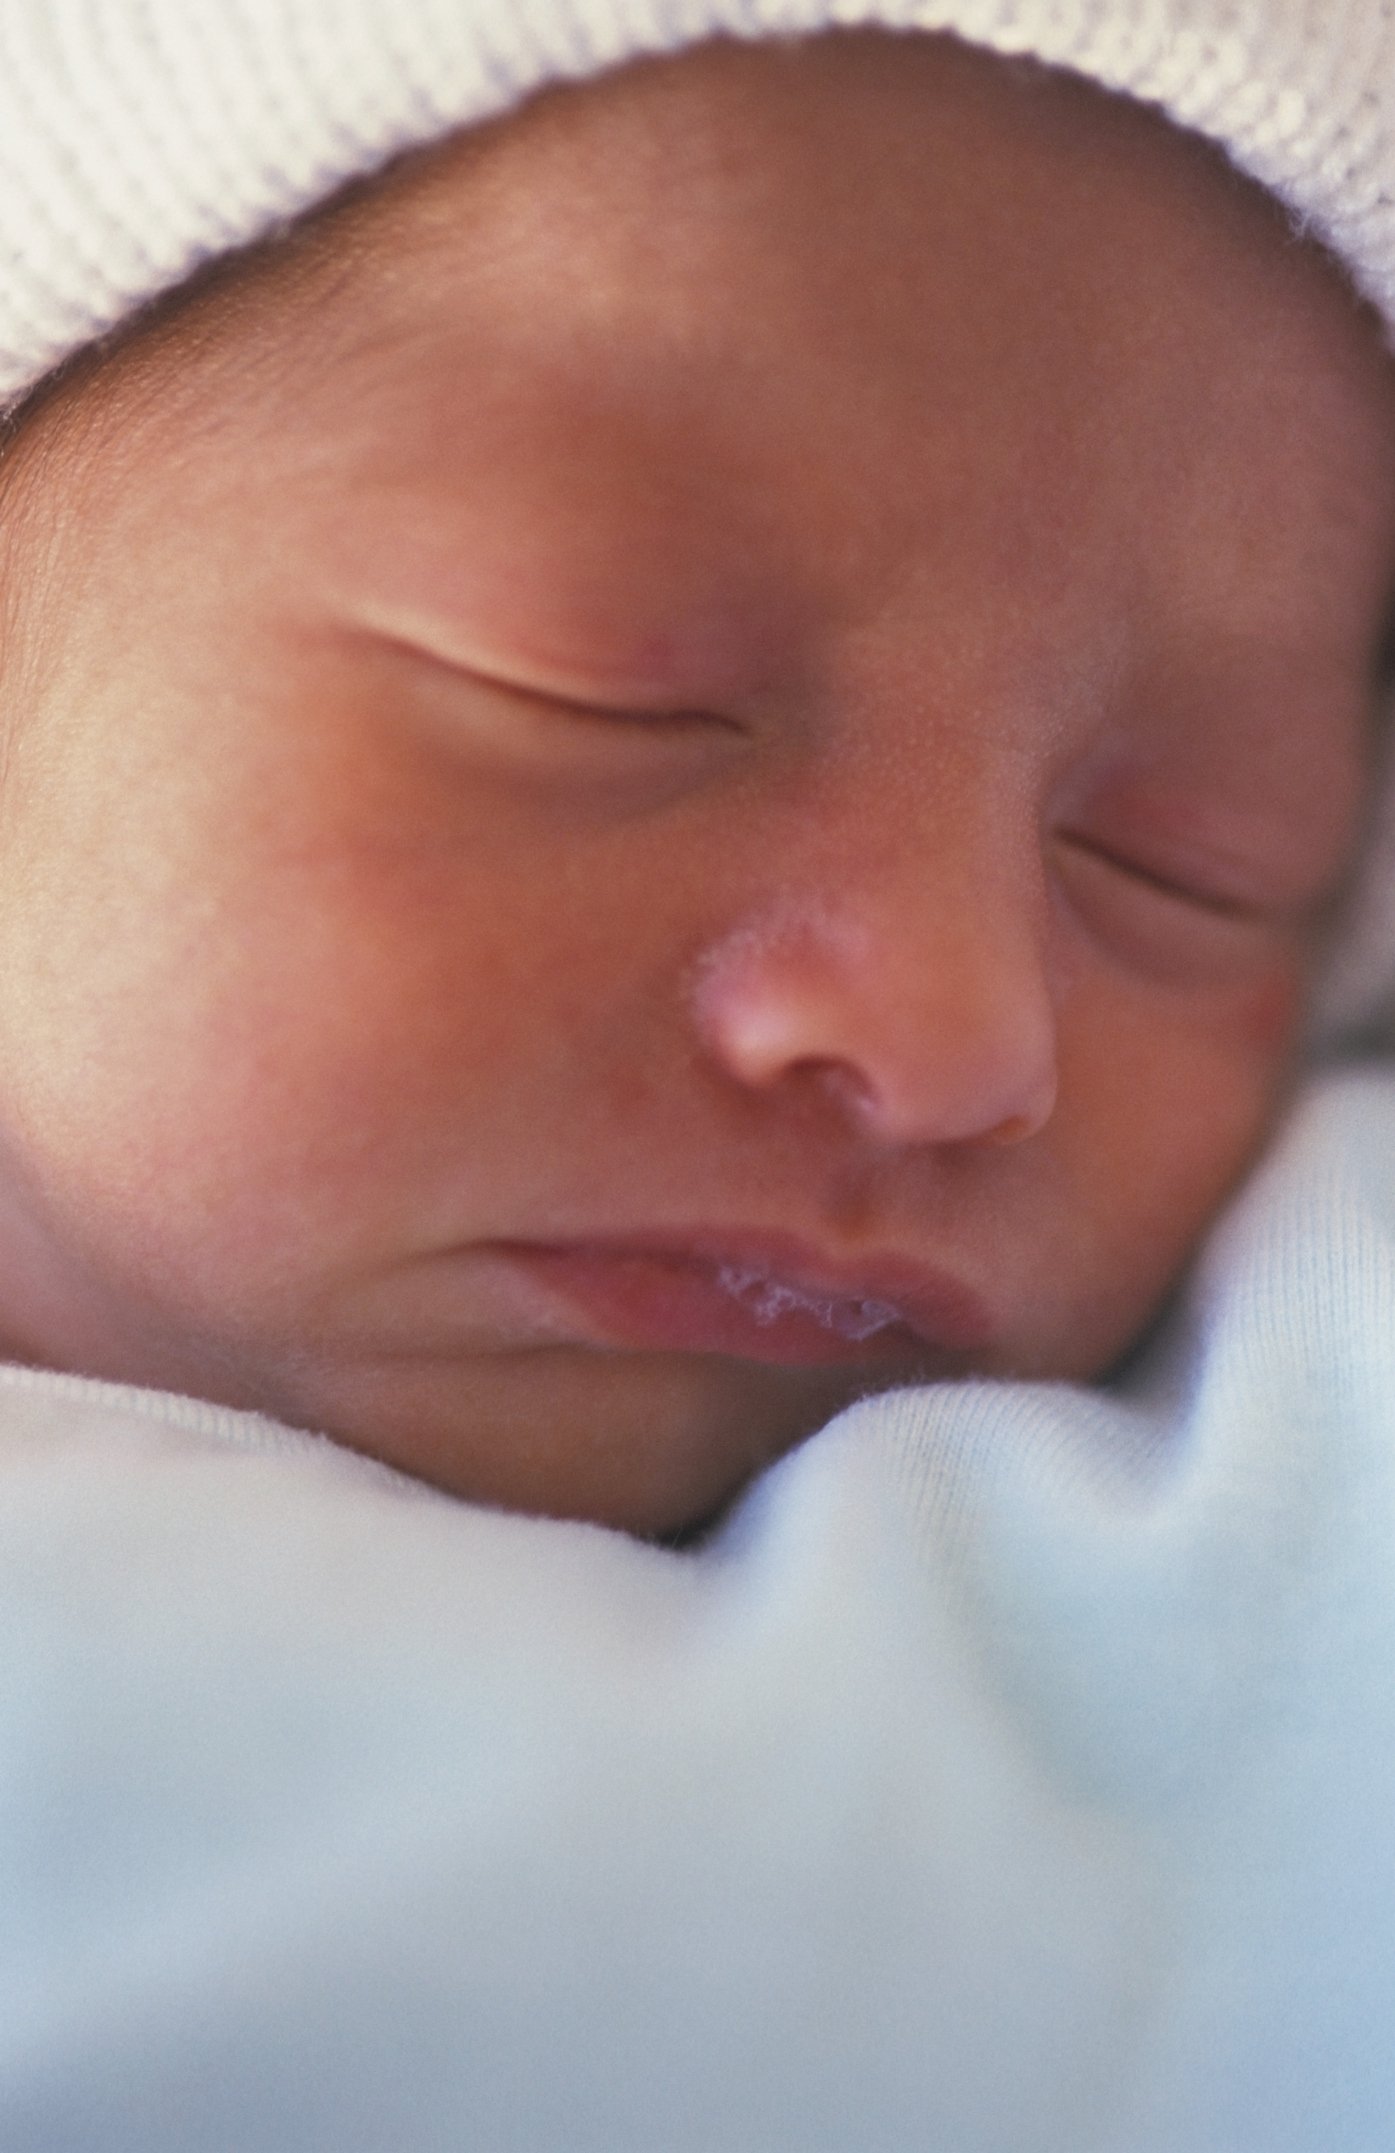 Jaundice Levels in a Newborn